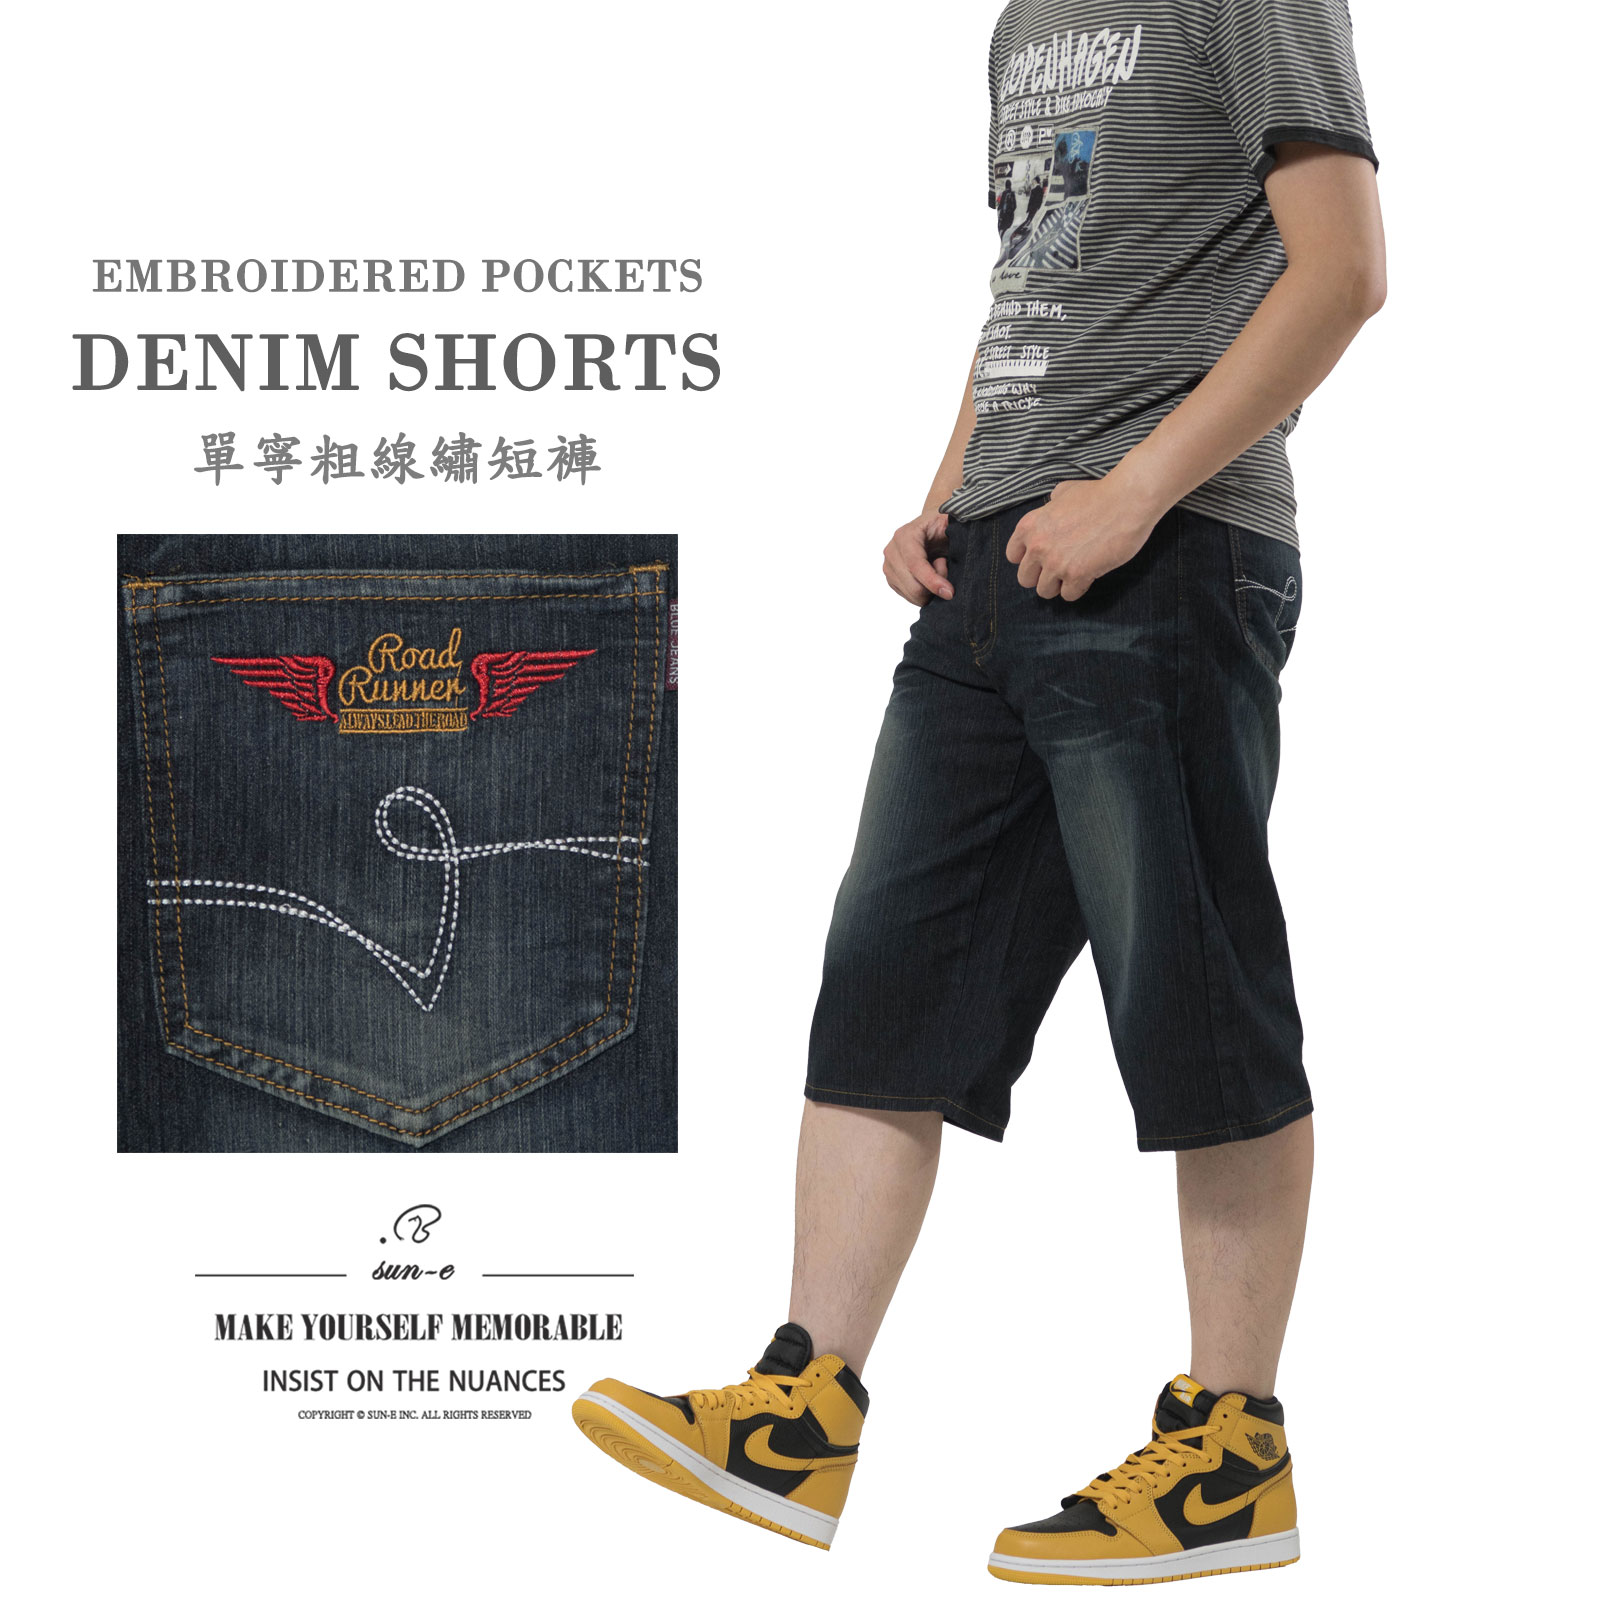 彈力丹寧粗線繡 七分牛仔褲 刷白牛仔短褲 車繡後口袋 Jean Shorts Denim Shorts Short Pants Stretch Jeans Embroidered Pockets (307-8577-21)深牛仔 L XL 2L 3L 4L 5L (腰圍:30~41英吋 / 76~104公分) 男 [實體店面保障] sun-e